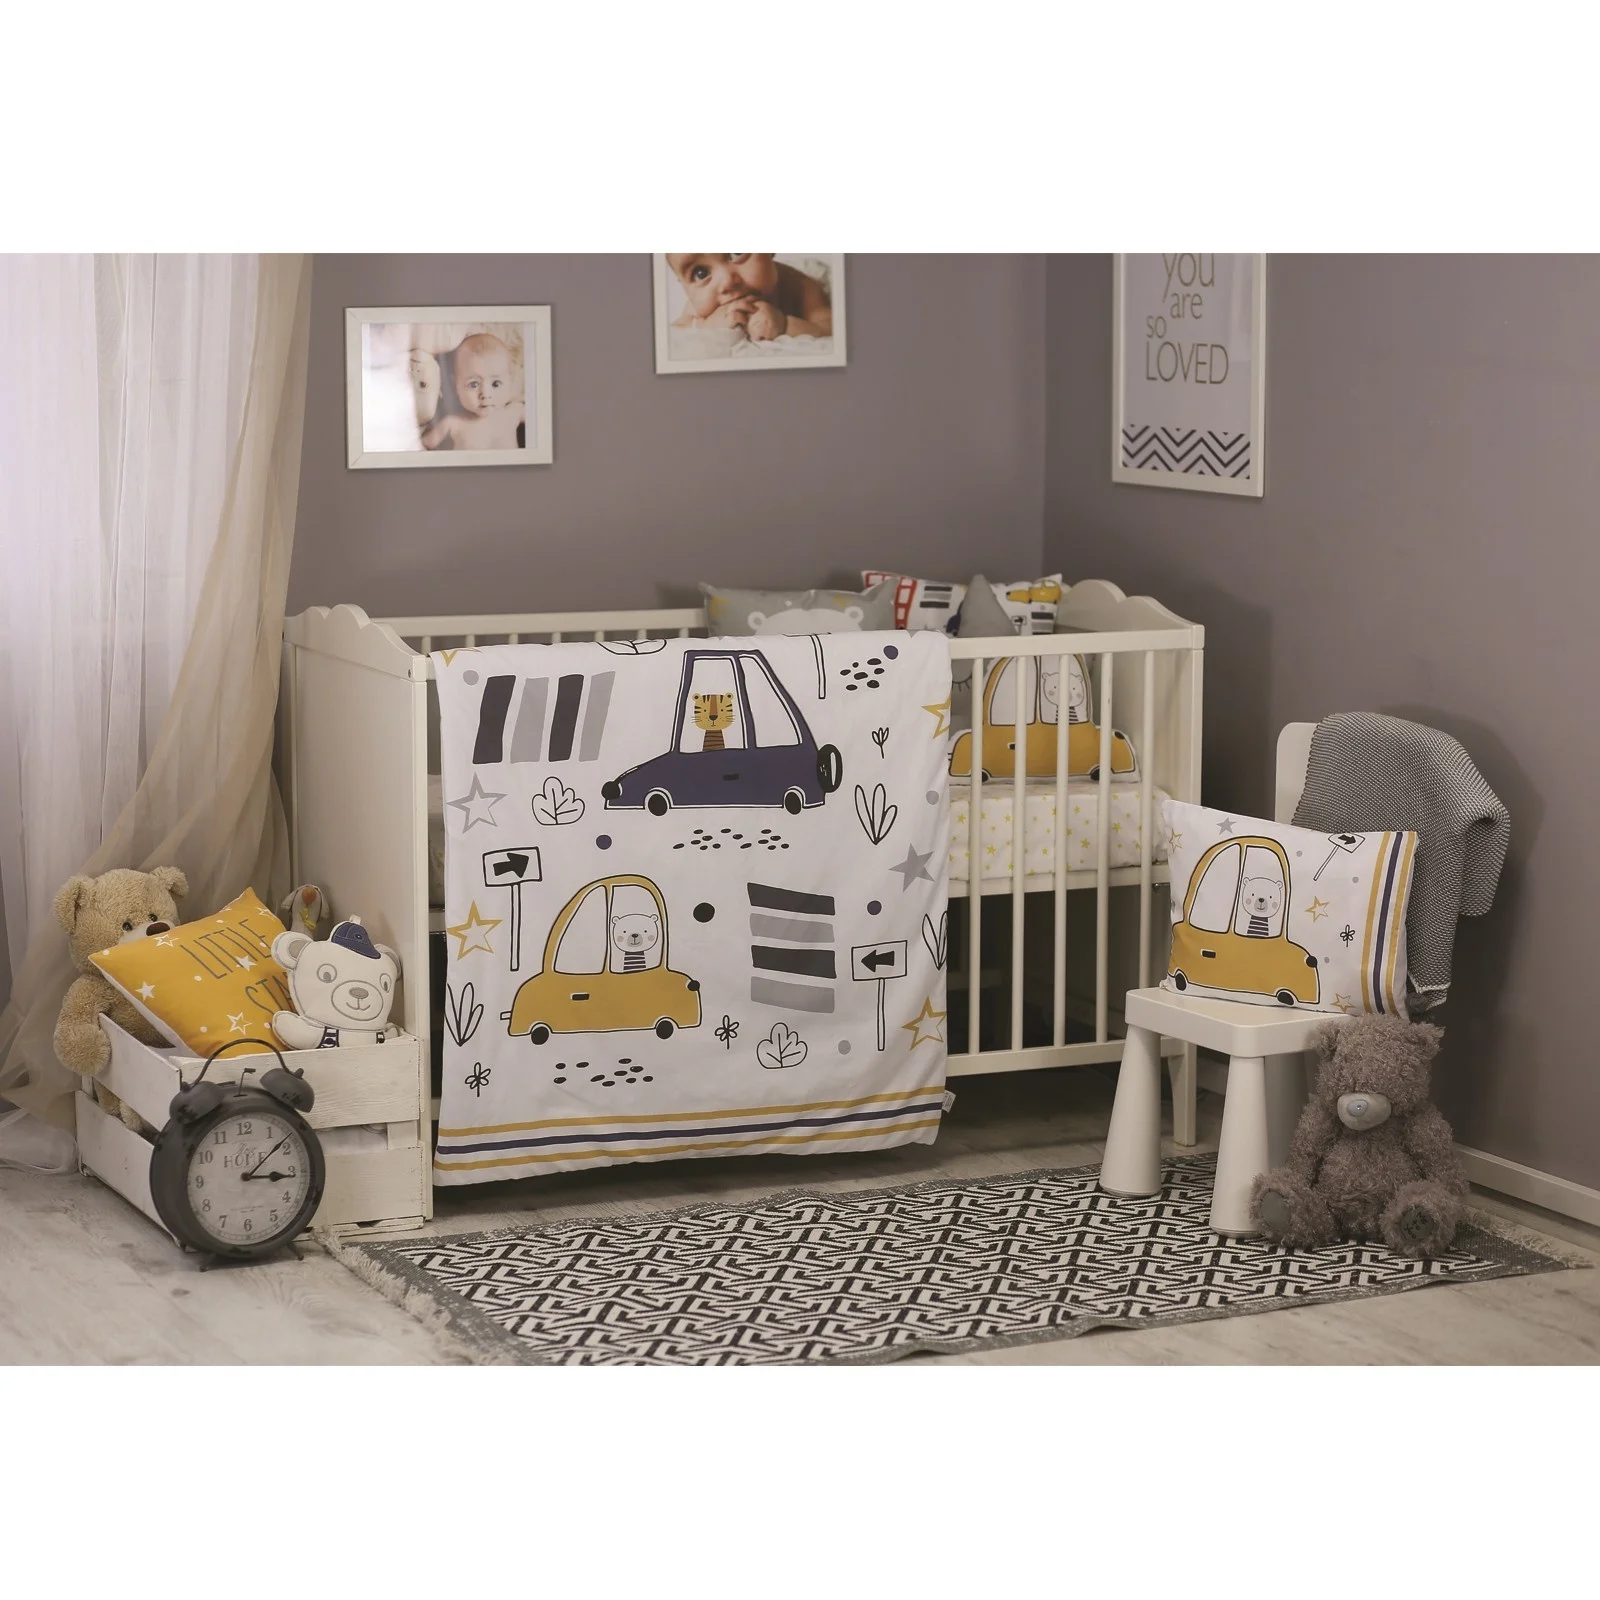 Ebebek Apolena детские машинки кровать заполненные одеяло 3 шт набор